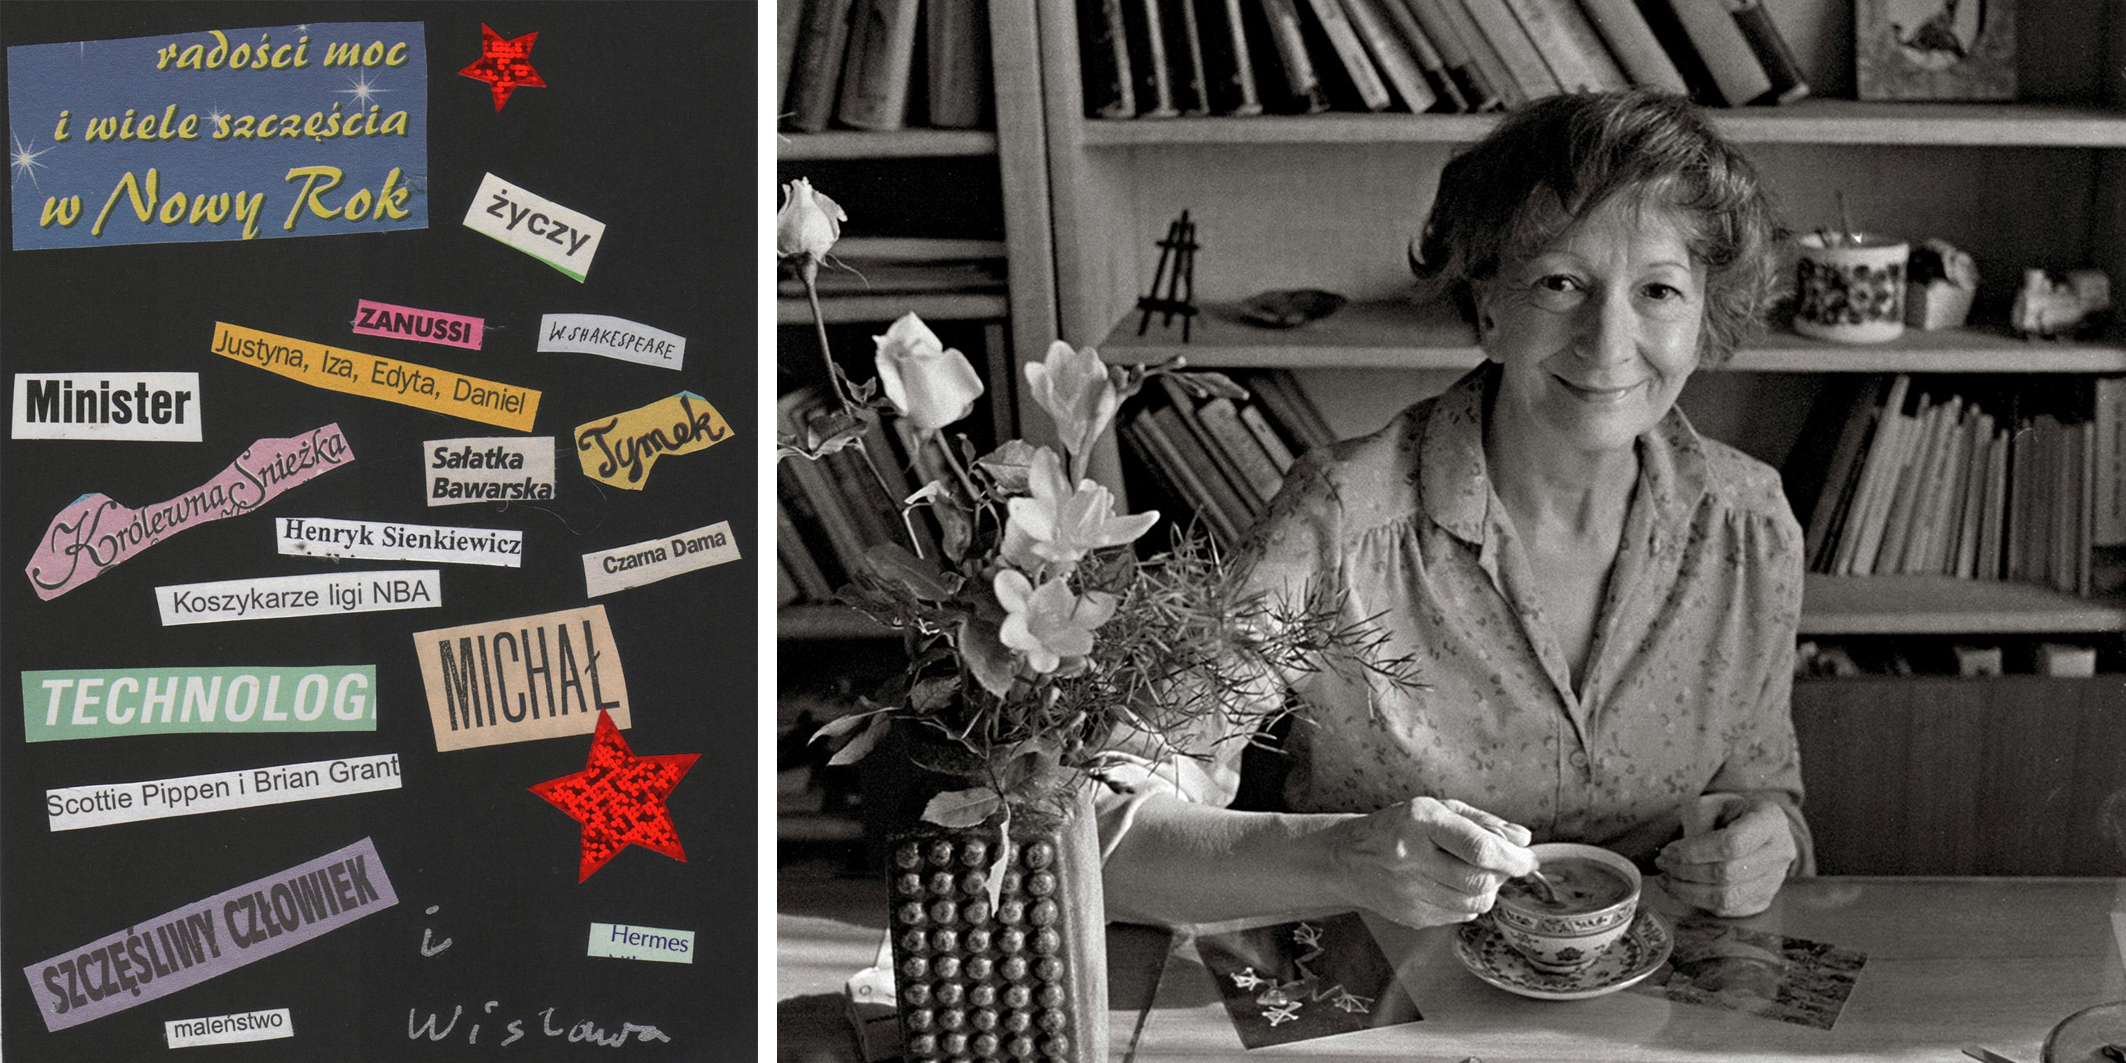 Genova celebra con un’ampia rassegna Wislawa Szymborska: poetessa e Premio Nobel per la Letteratura nel 1996